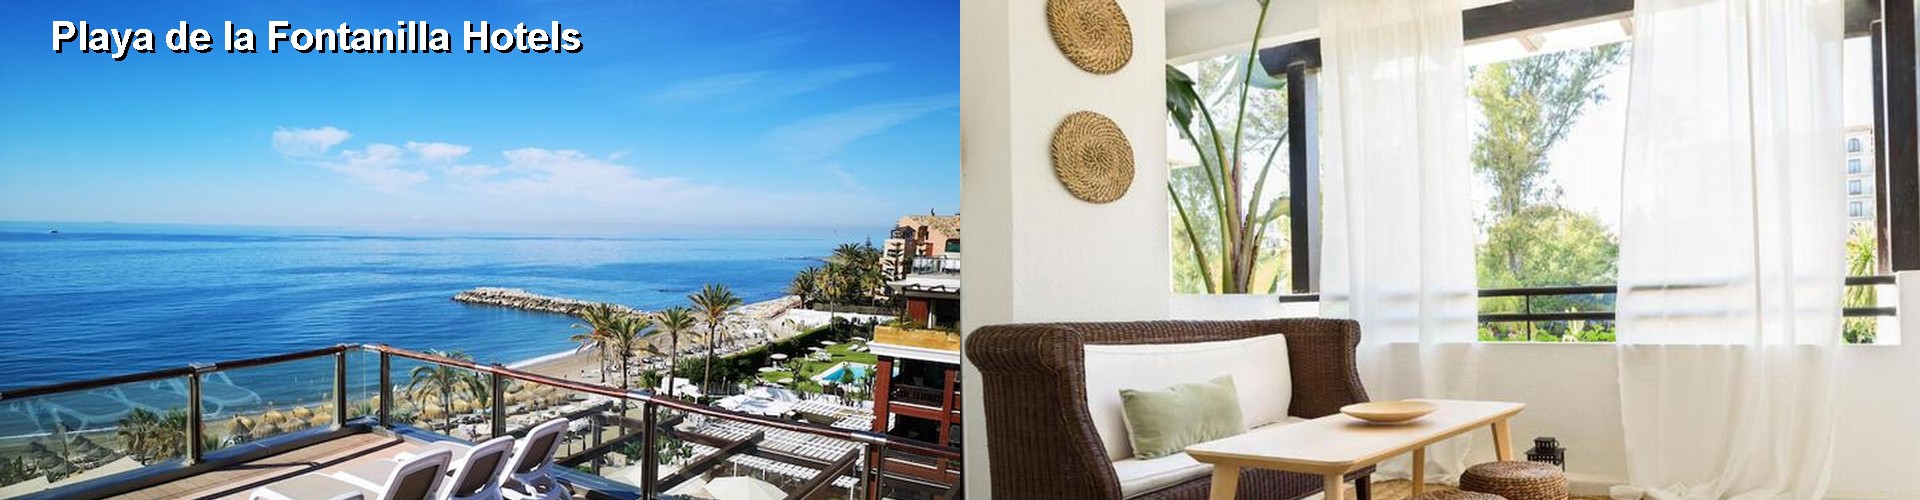 5 Best Hotels near Playa de la Fontanilla